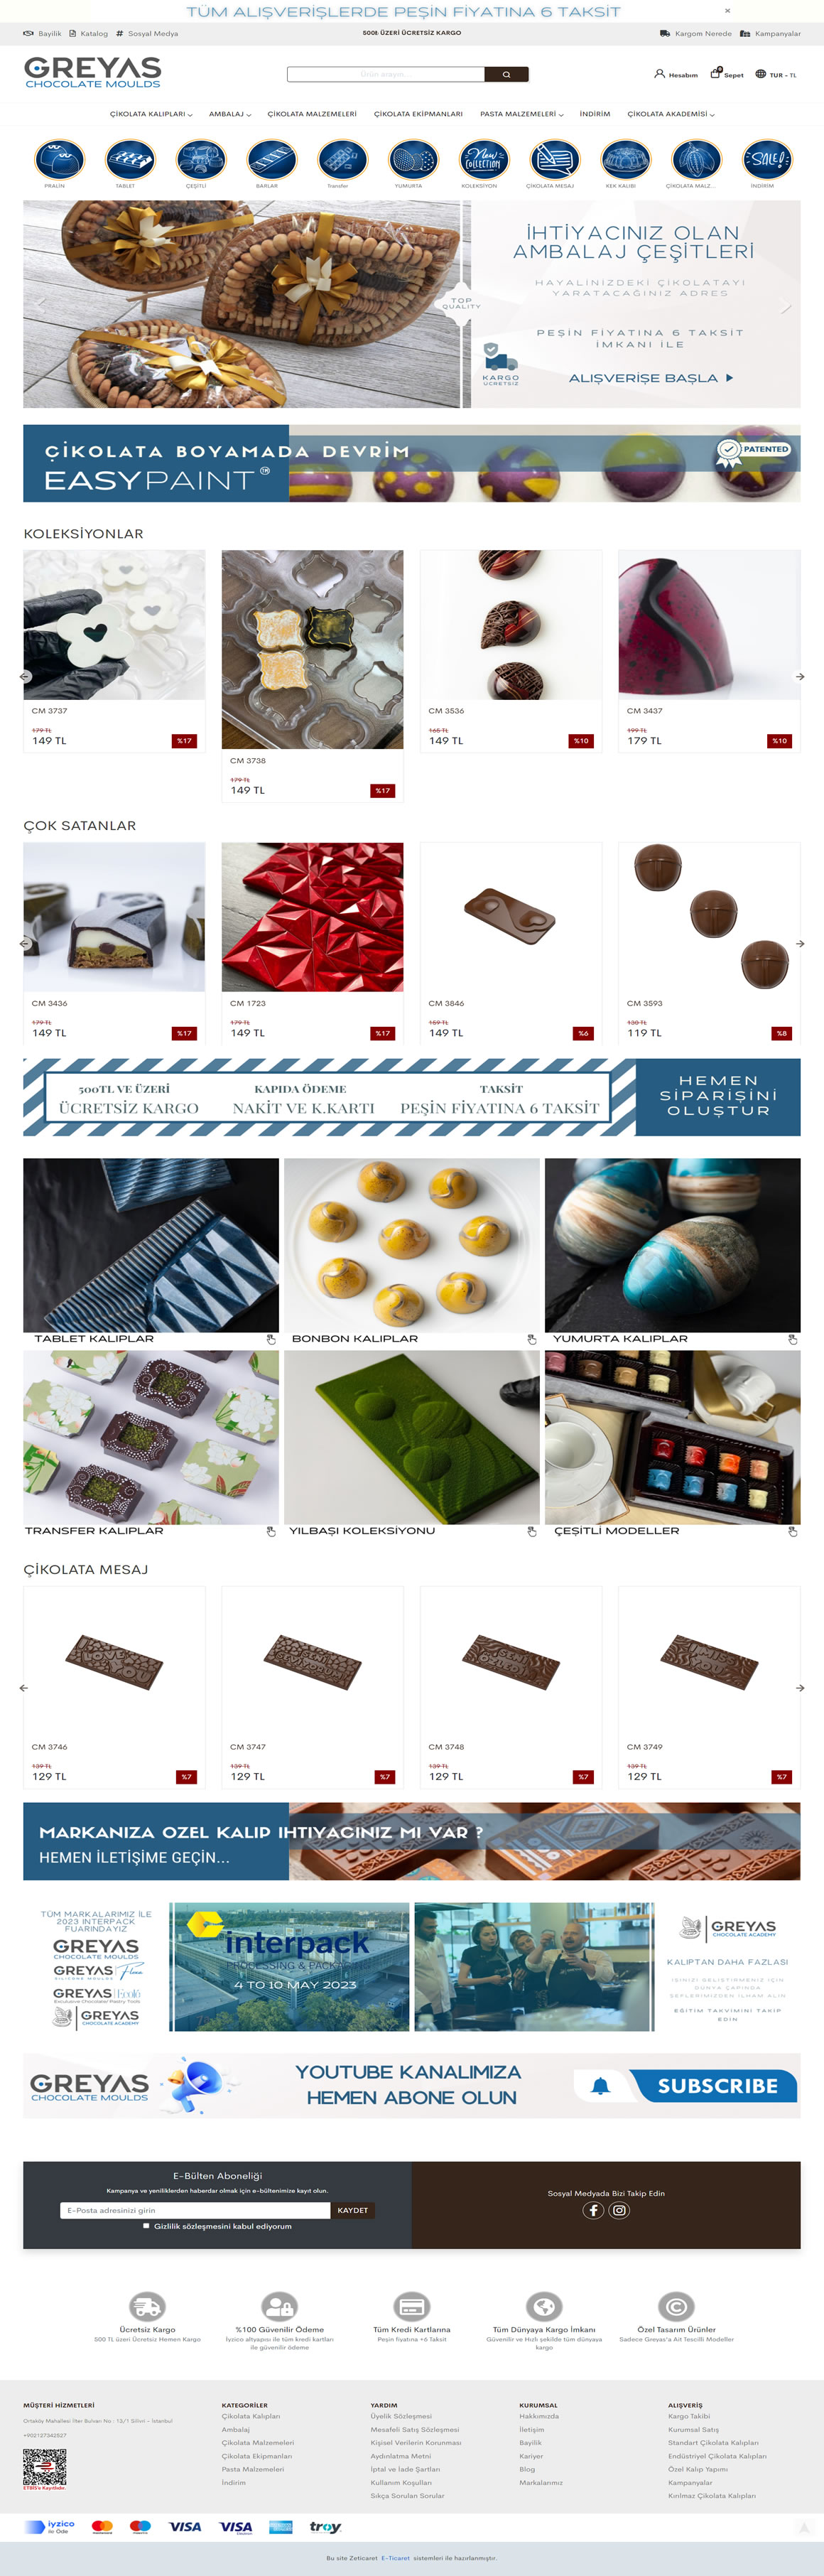 Greyas Chocolate Moulds eticaret yazılımı istanbul